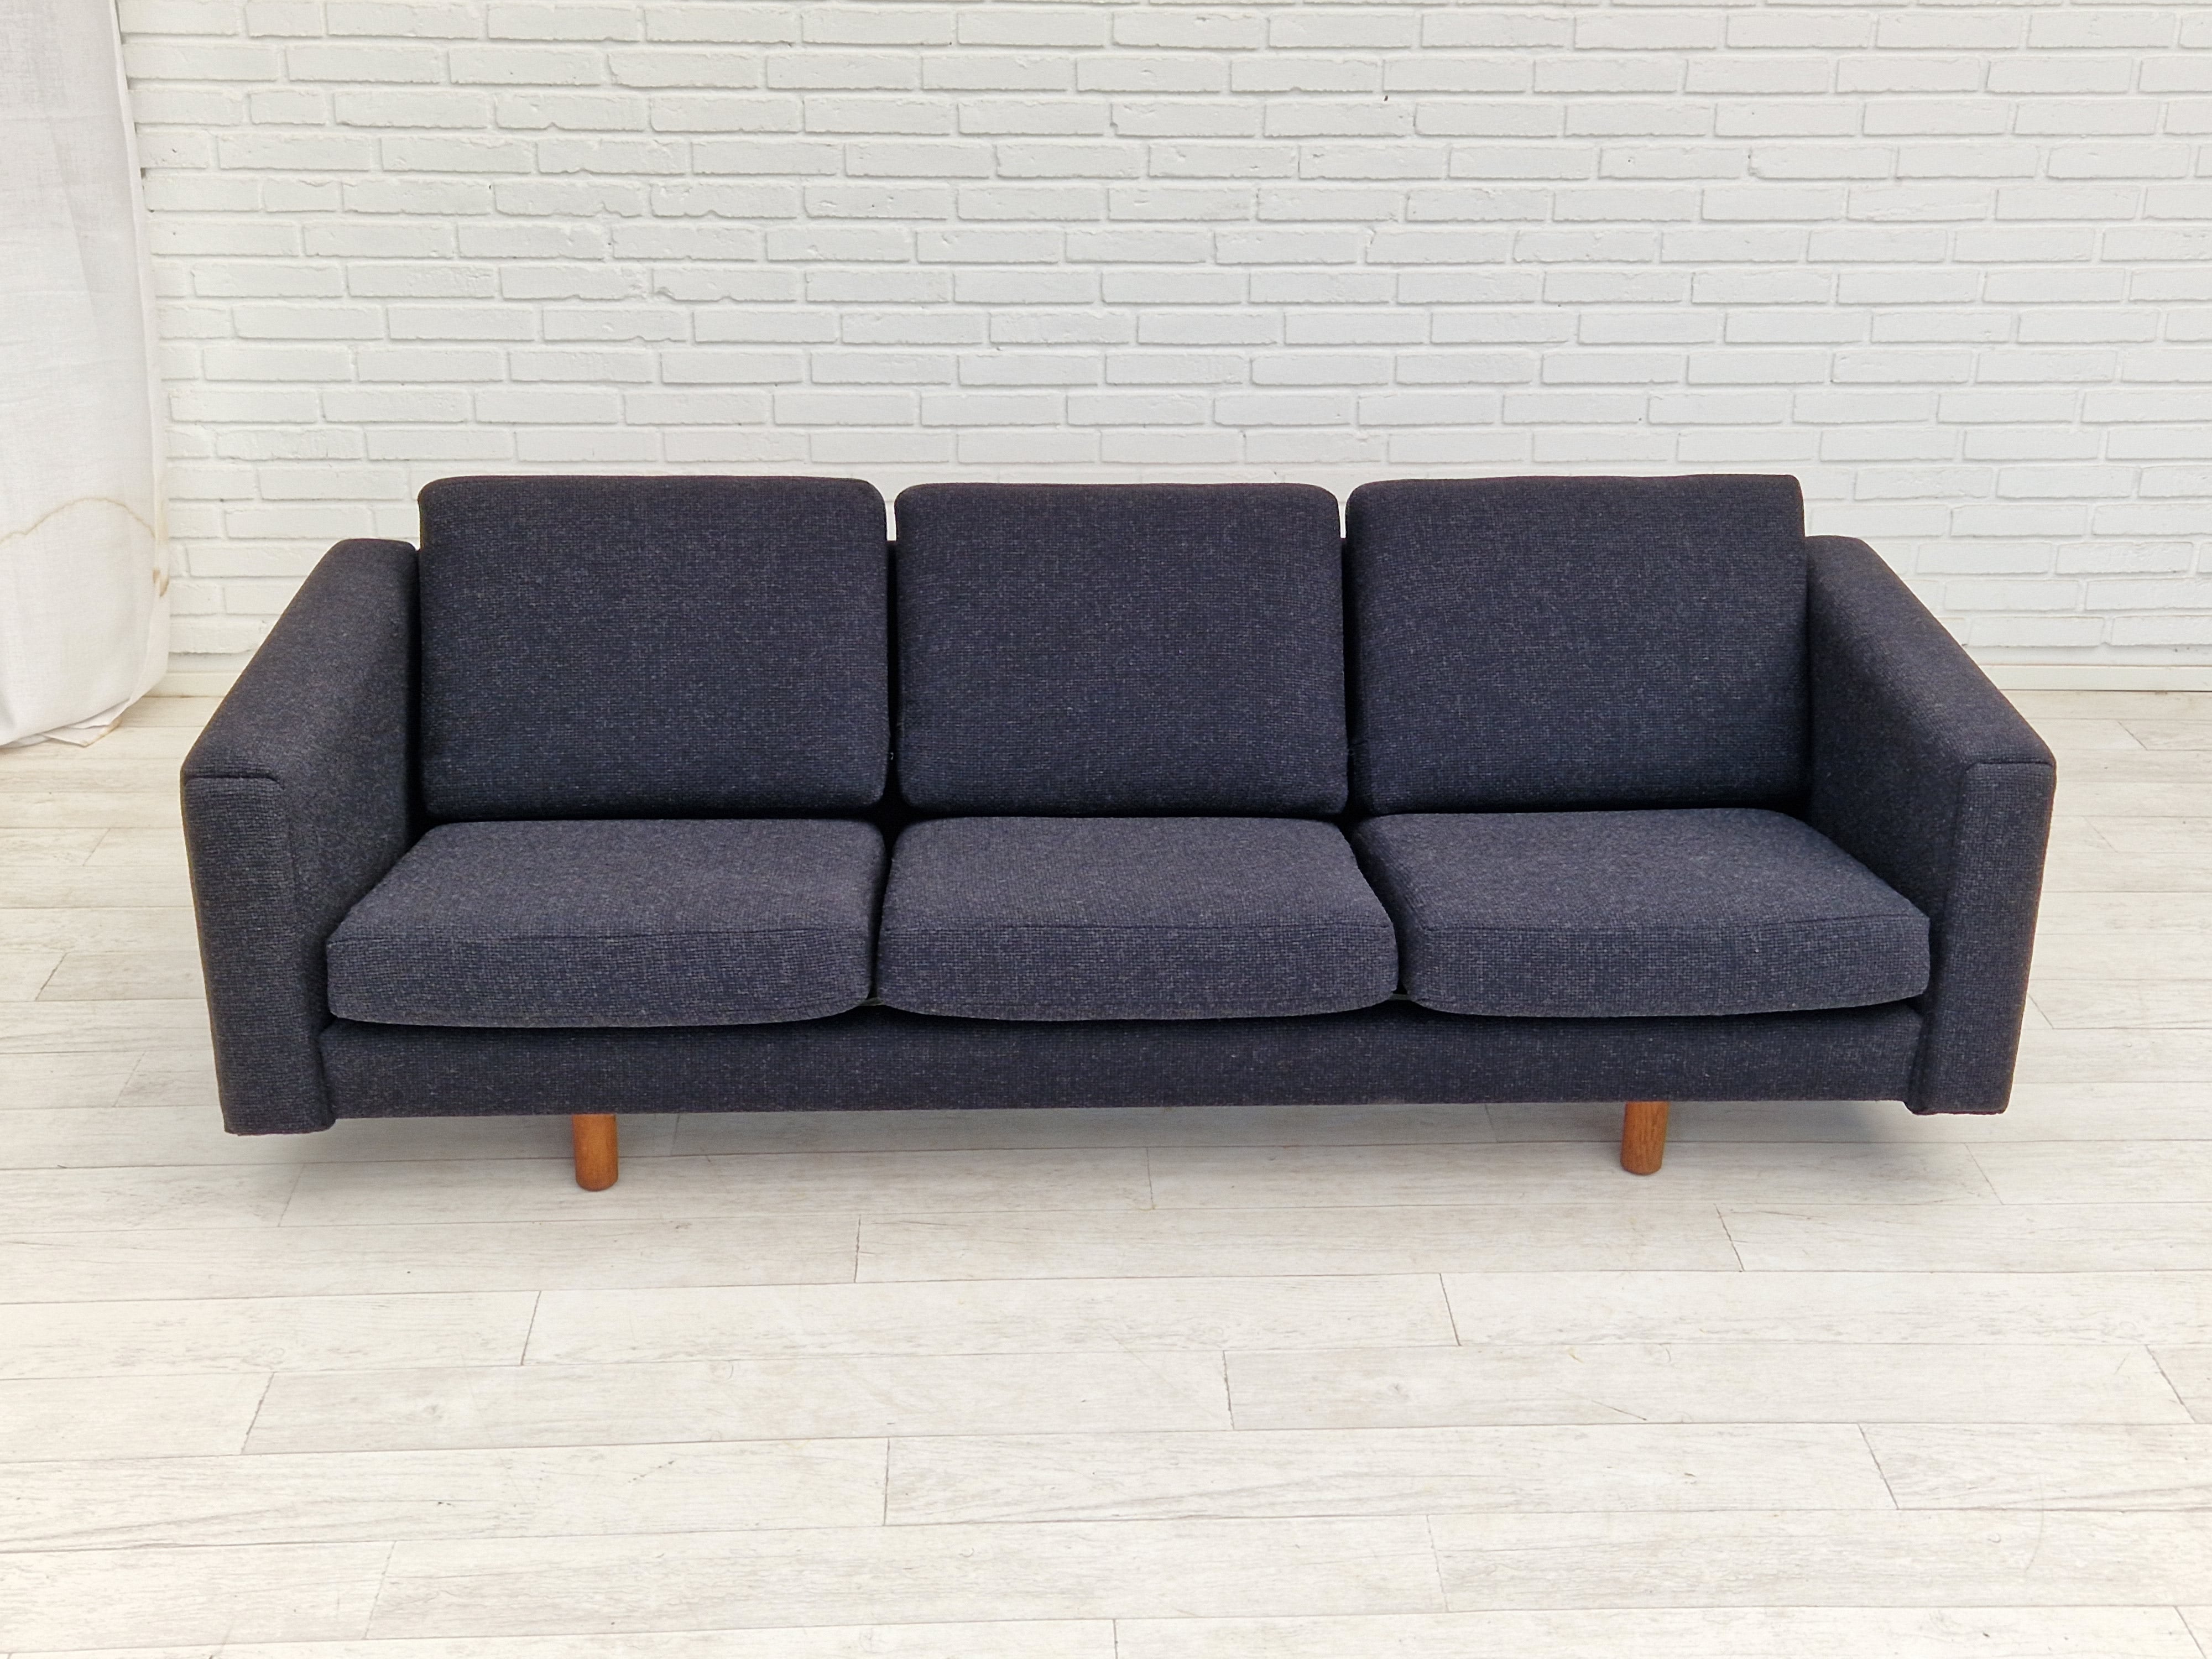 70erne, Dansk design af H.J.Wegner, model GE 300, total renoveret sofa.